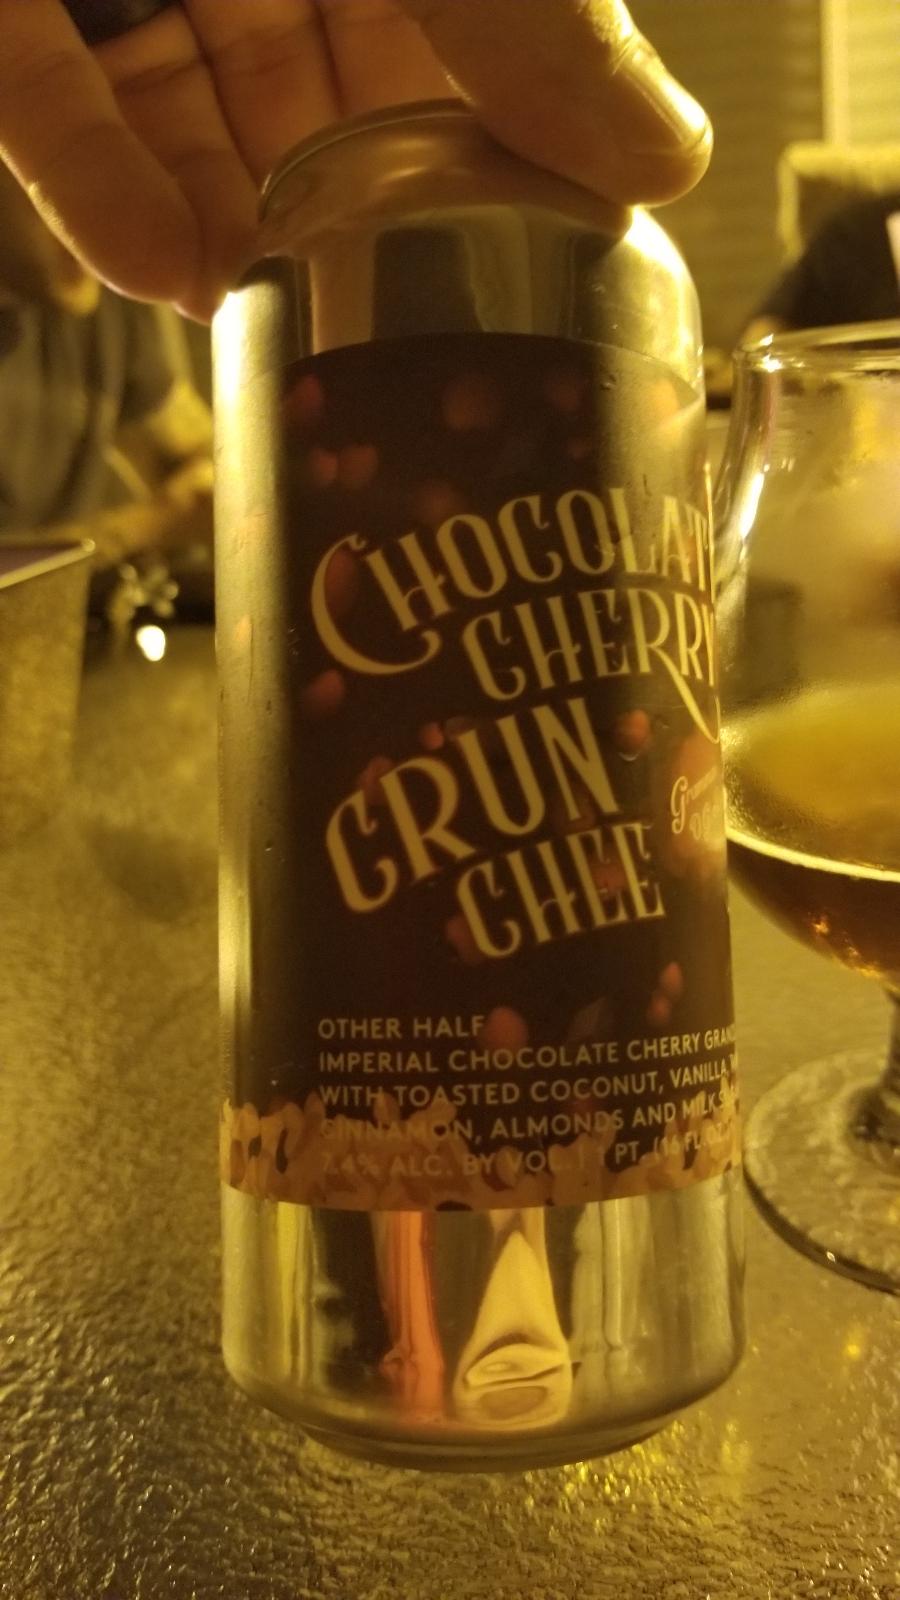 Chocolate Cherry Crunchee